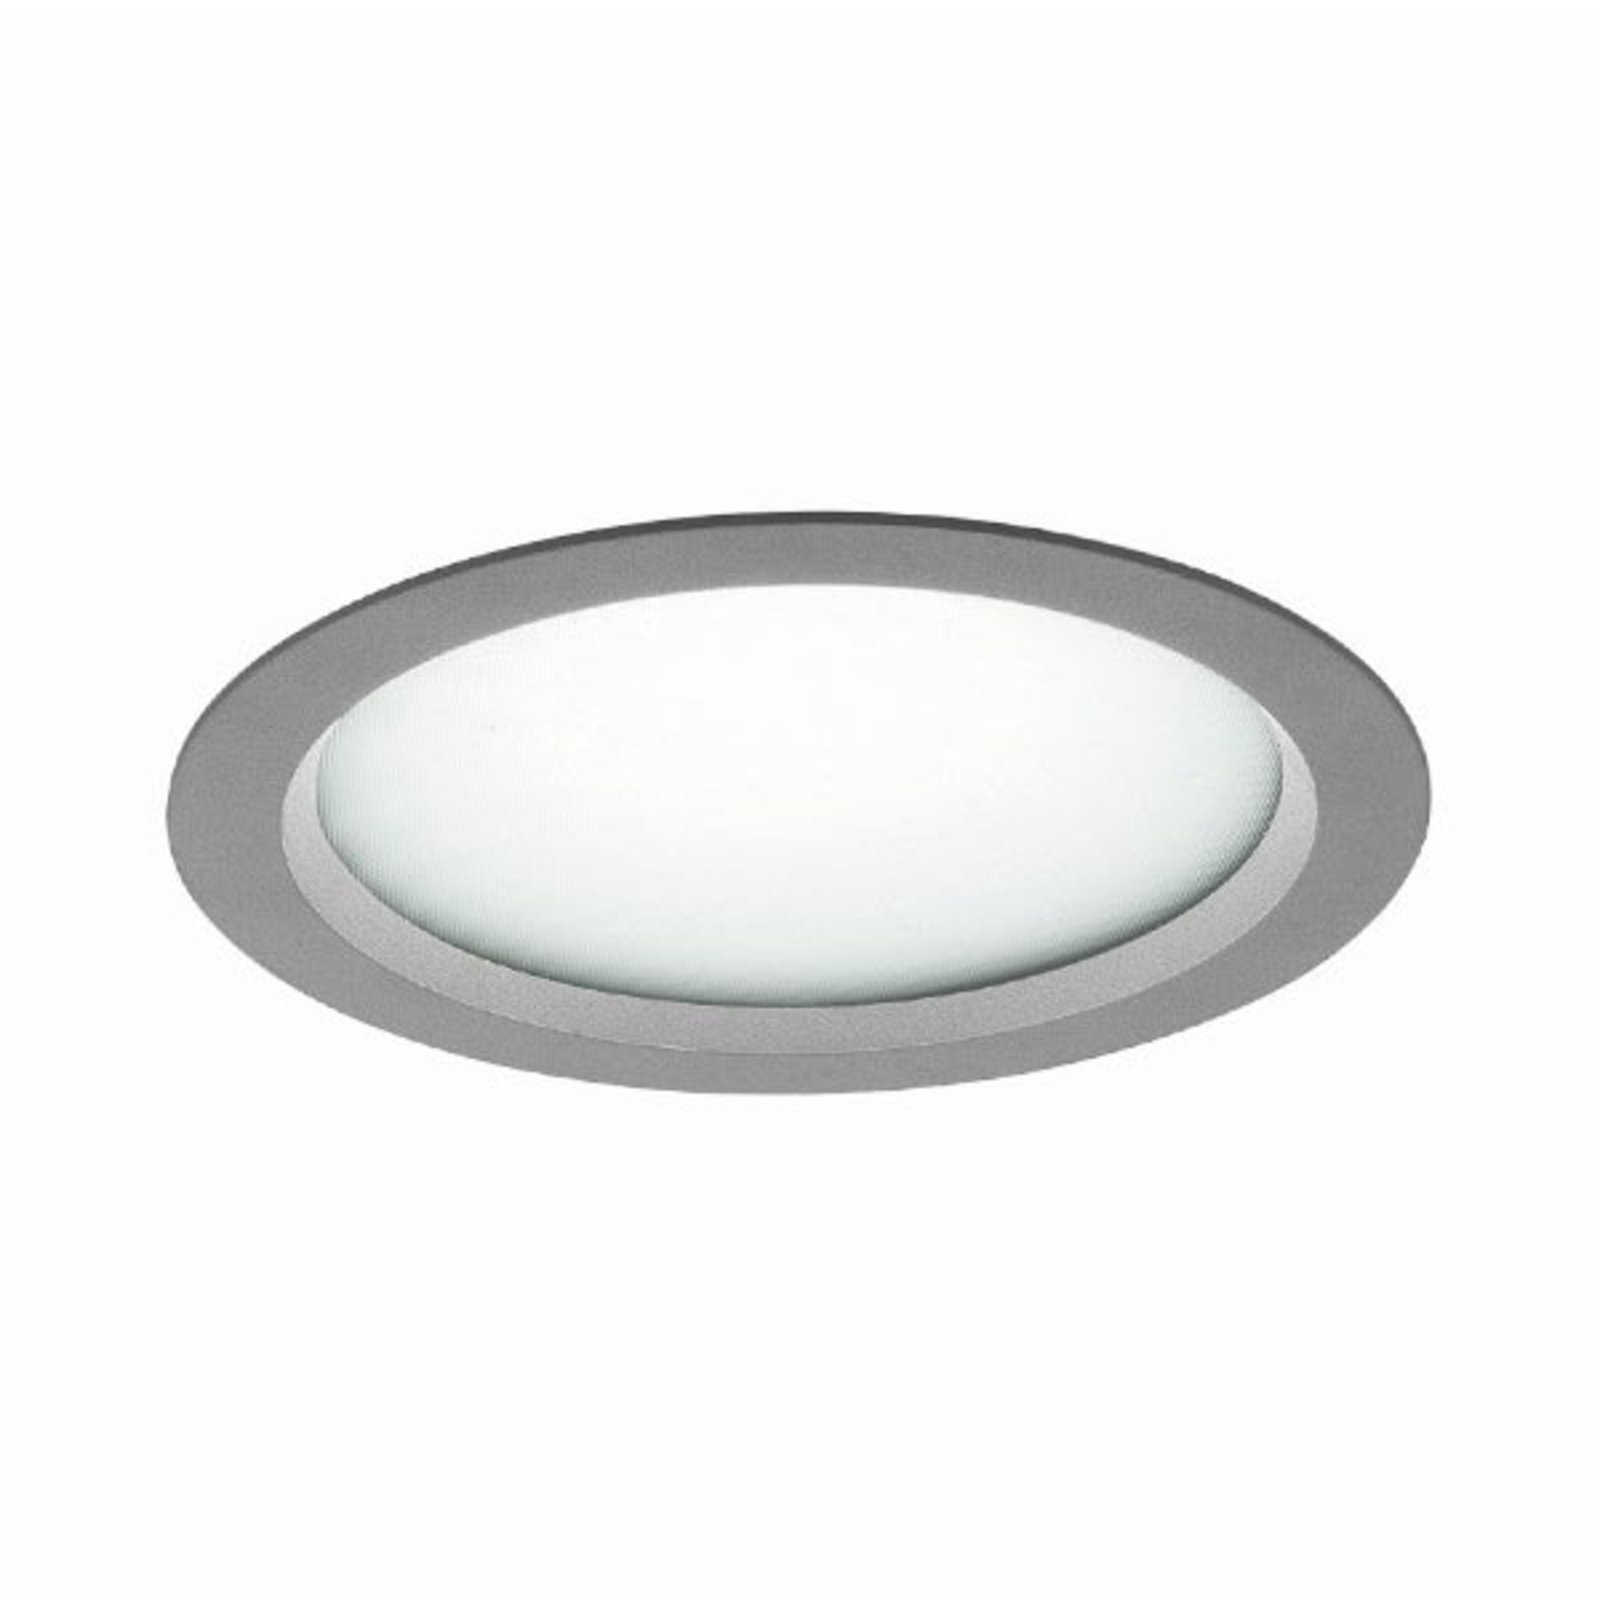 Μικροπρισματικό φωτιστικό εσοχής LED Vale-Tu Flat Large